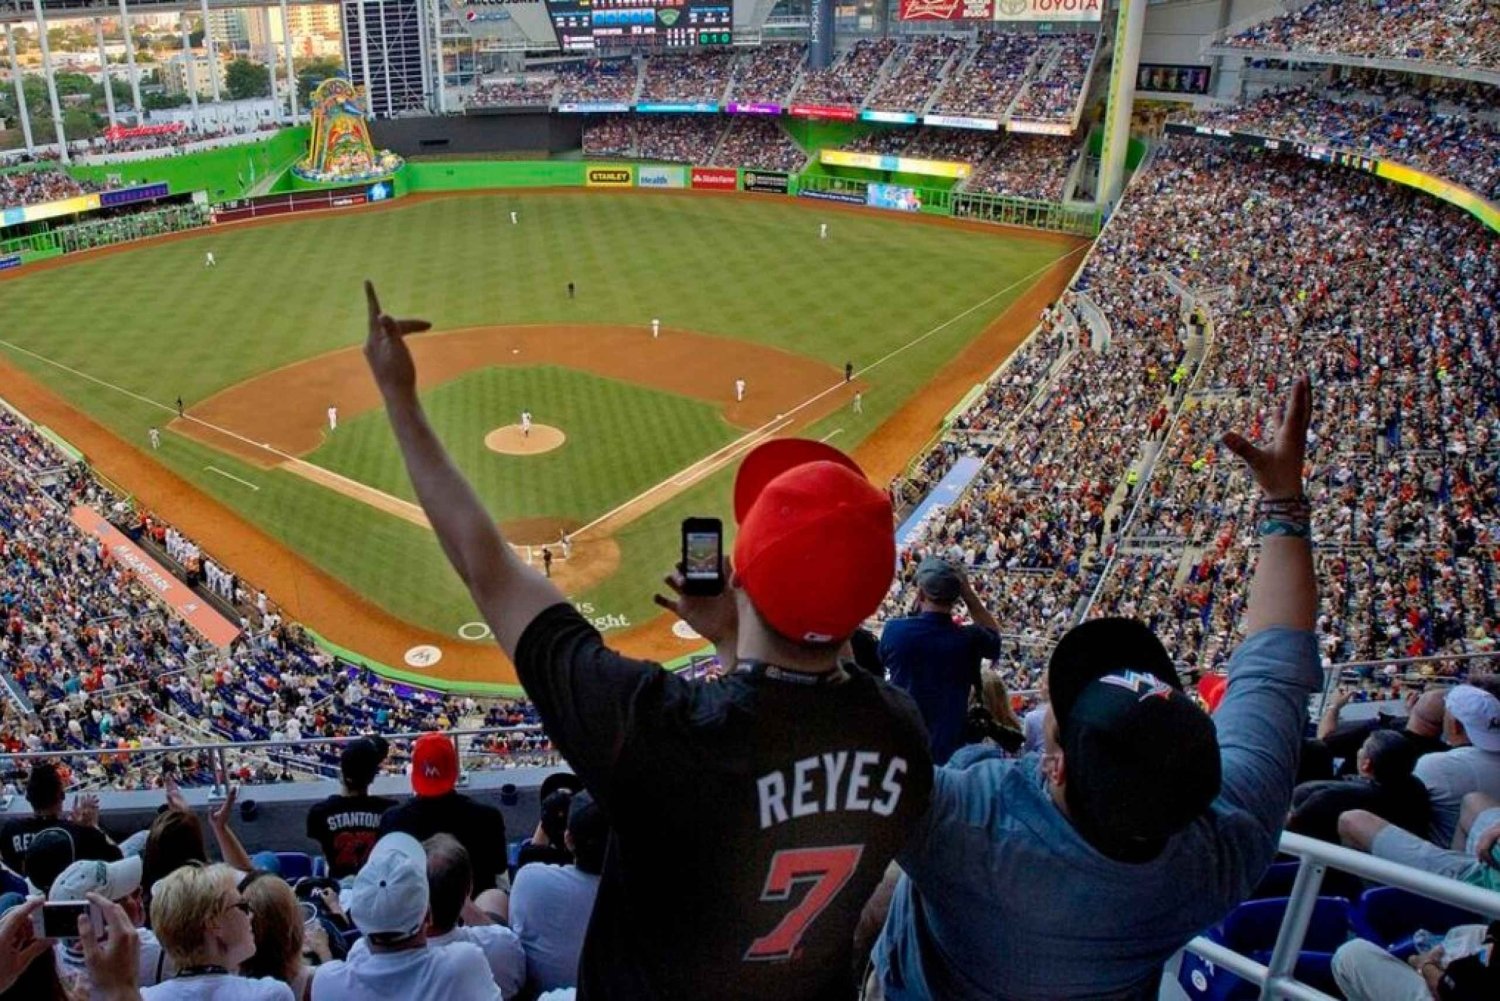 Miami : Billet pour le match de baseball des Marlins de Miami au parc loandepot